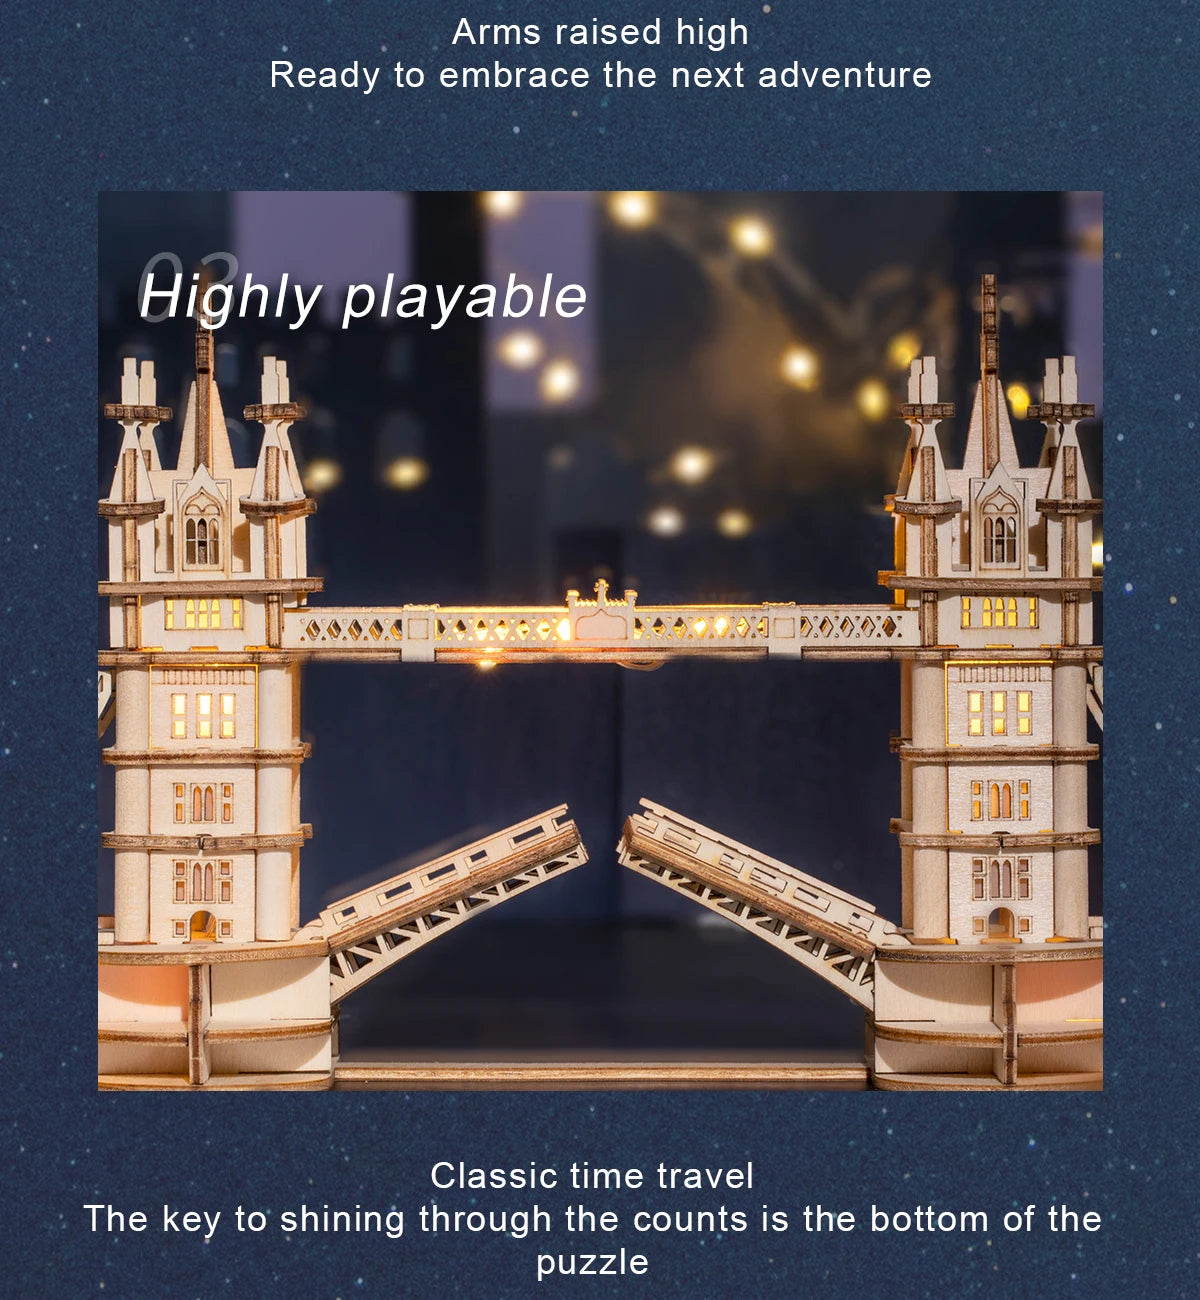 DIY 3D Tower Bridge Big Ben Famous Building Wooden Puzzle - Easier Life Emporium